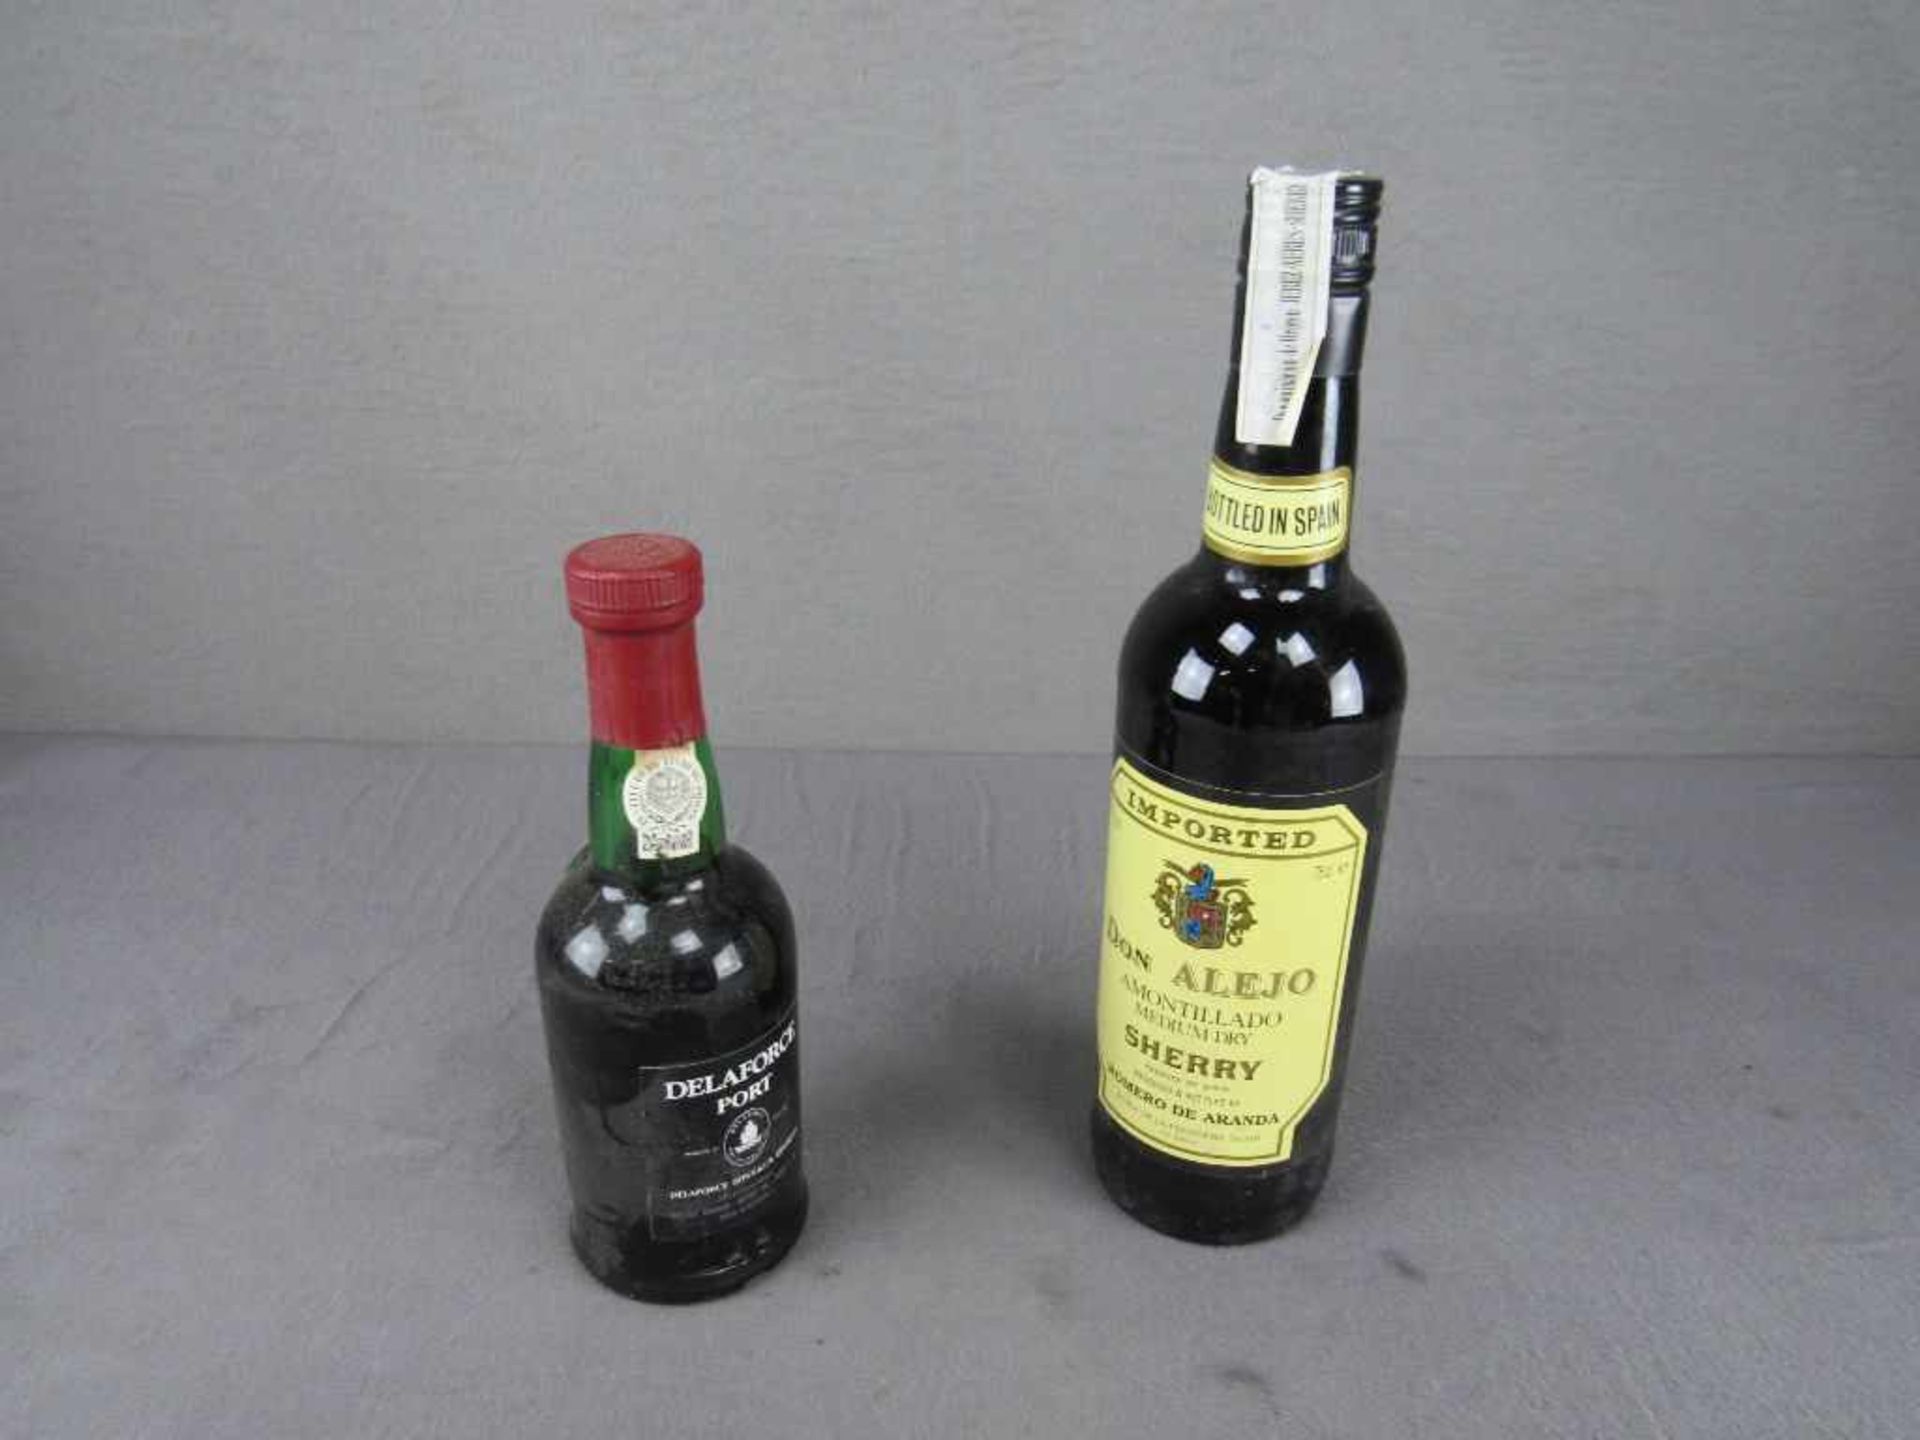 Zwei Flaschen Alkohol Sherry und Portwein- - -20.00 % buyer's premium on the hammer price19.00 % VAT